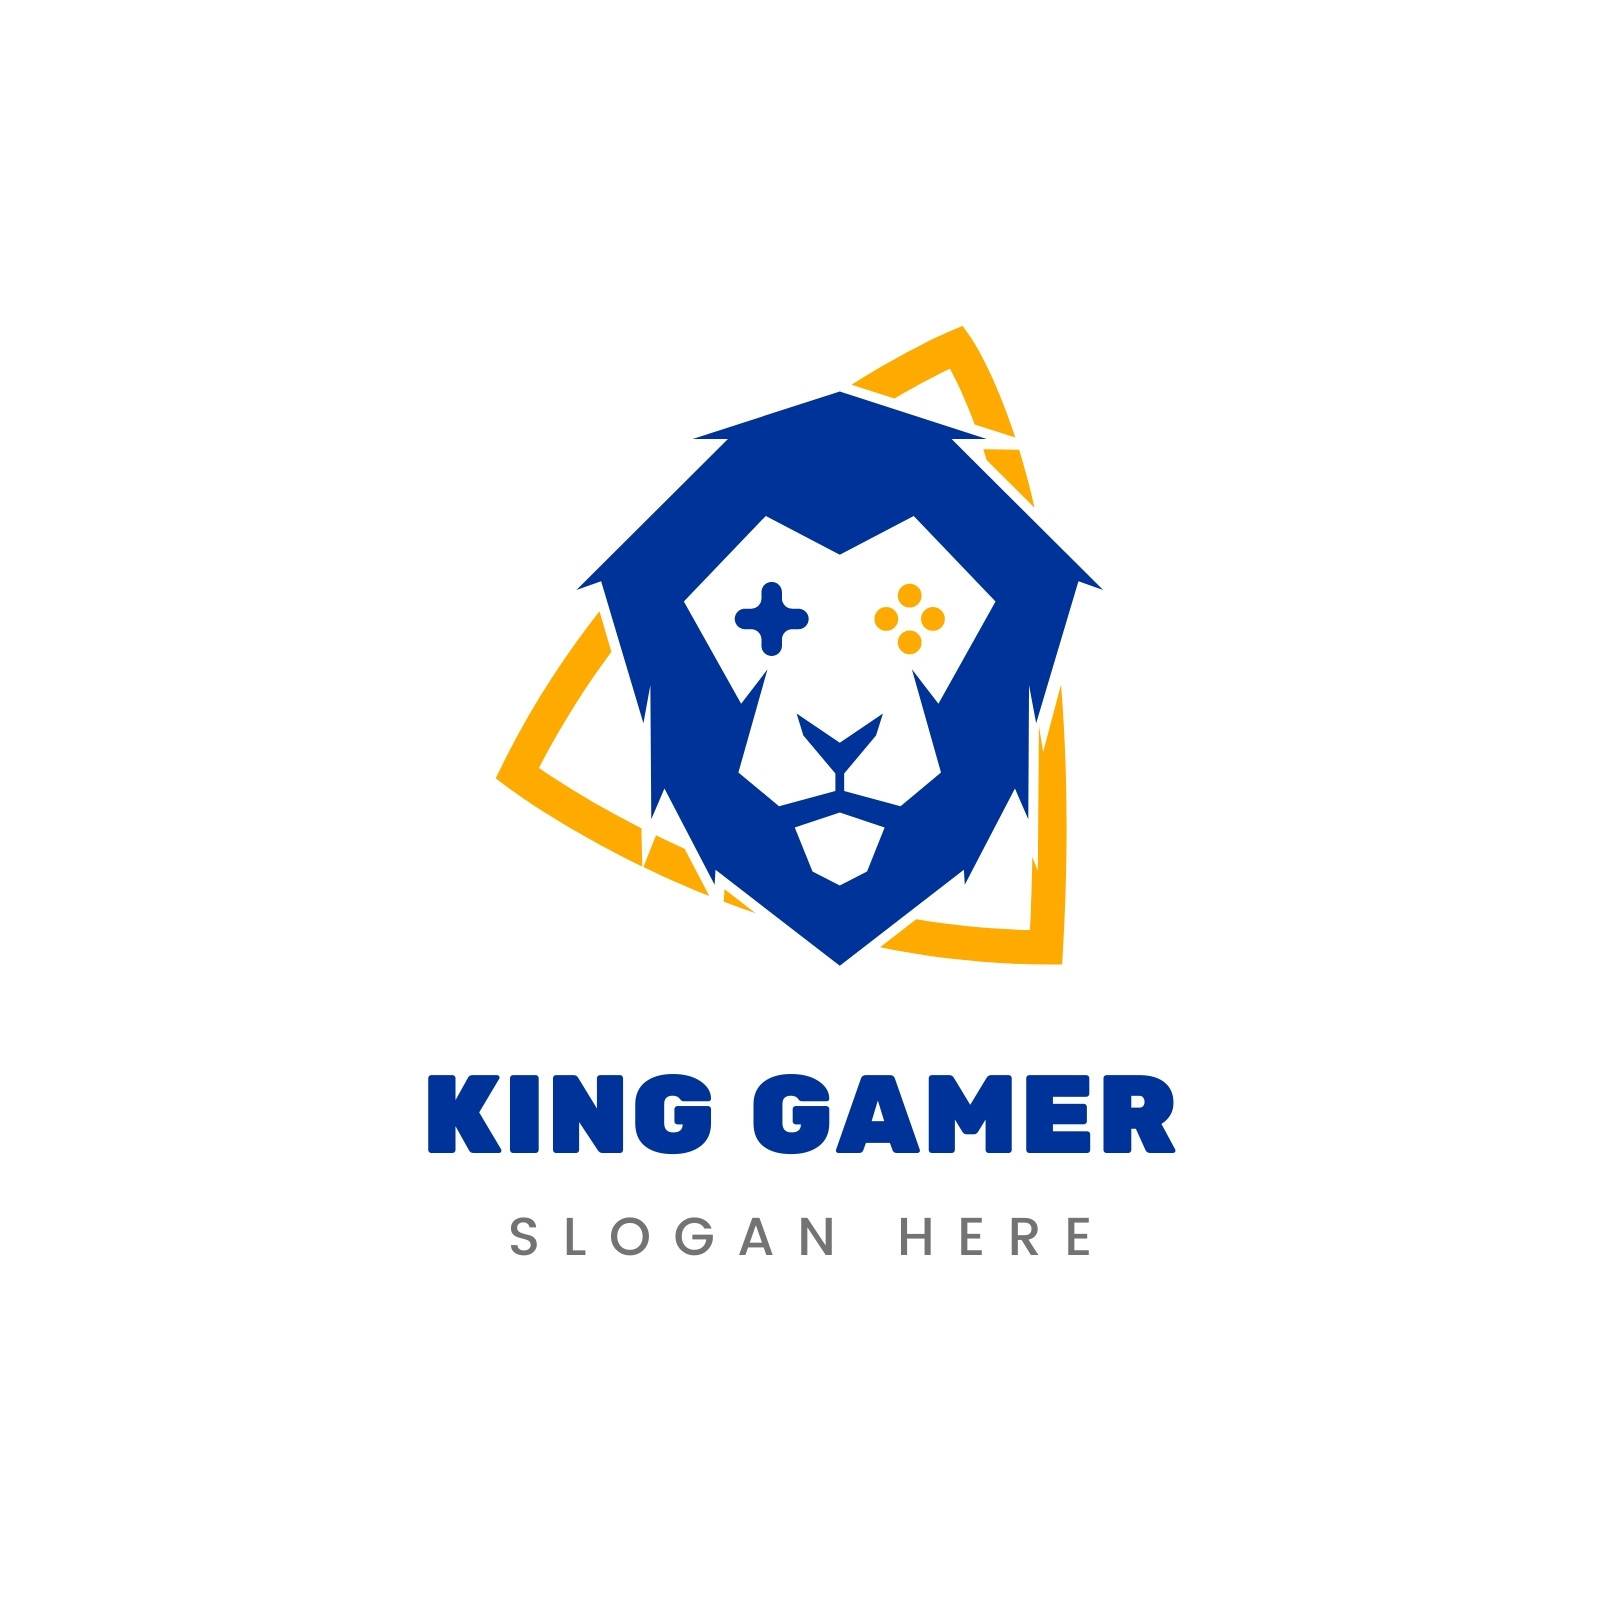 Unique professional gaming logo design | Upwork